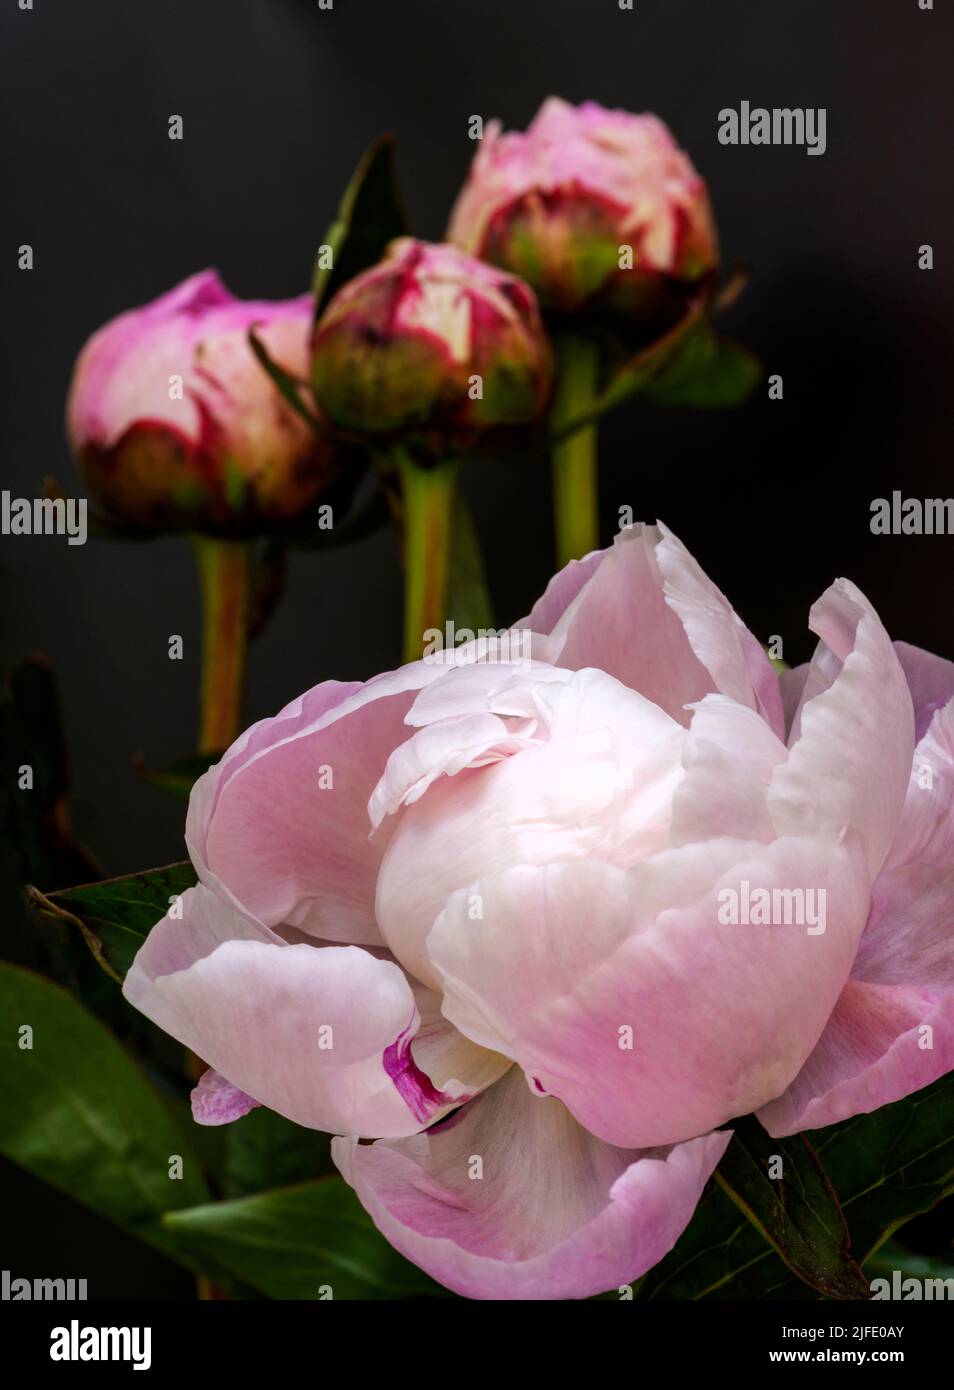 Un bel fiore di peonia rosa che si apre a breve, con tre boccioli sullo sfondo. I petali piegati sembrano piume di cigno. Foto Stock